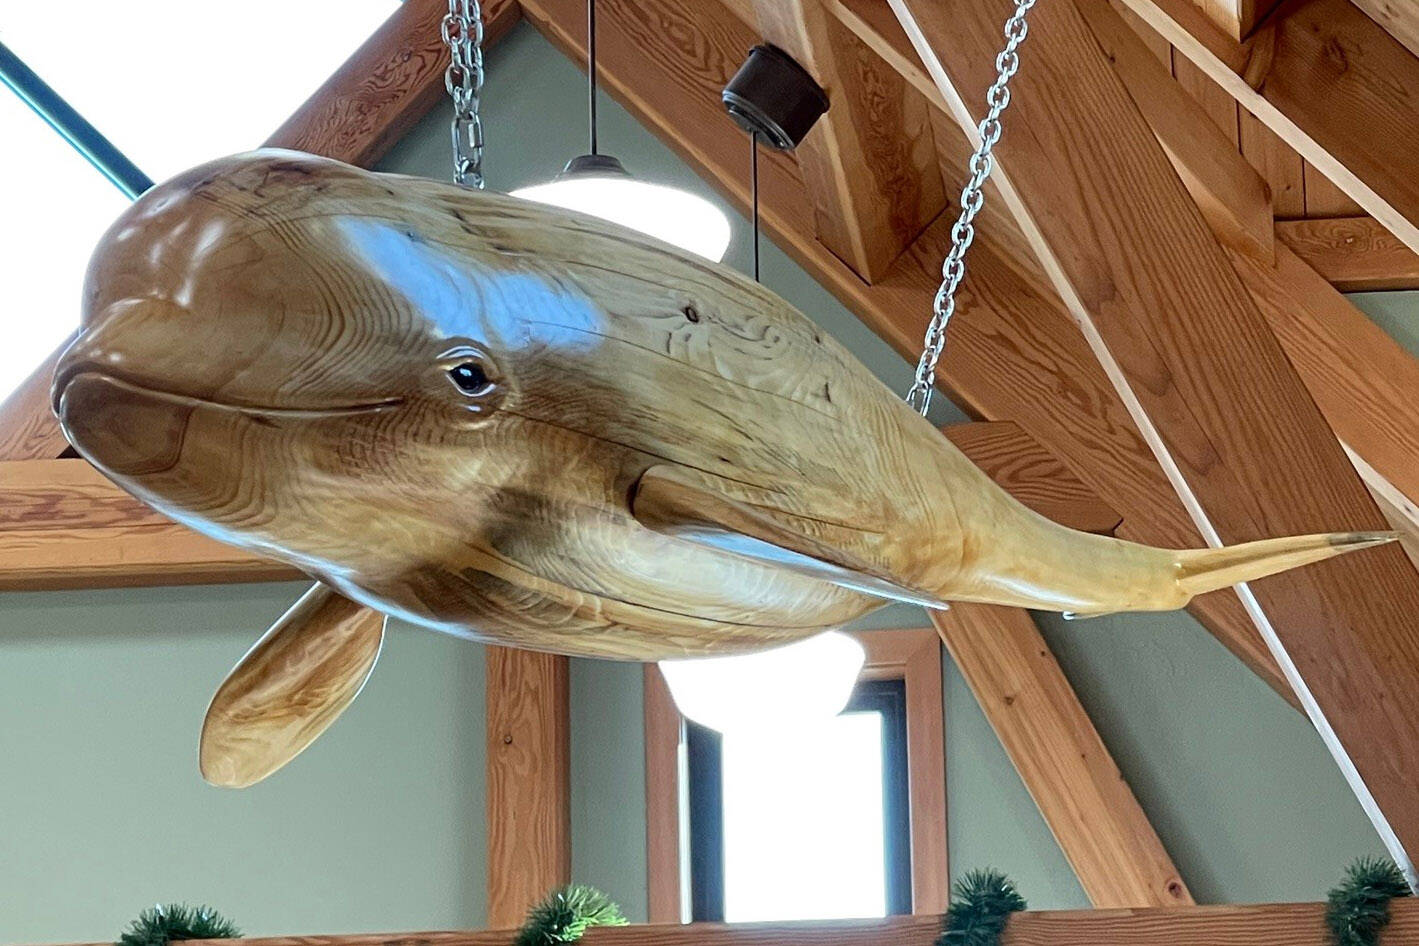 Photo courtesy of the Nikiski Senior Center
A wood-carved whale hangs in the Nikiski Senior Center on Sept. 23.